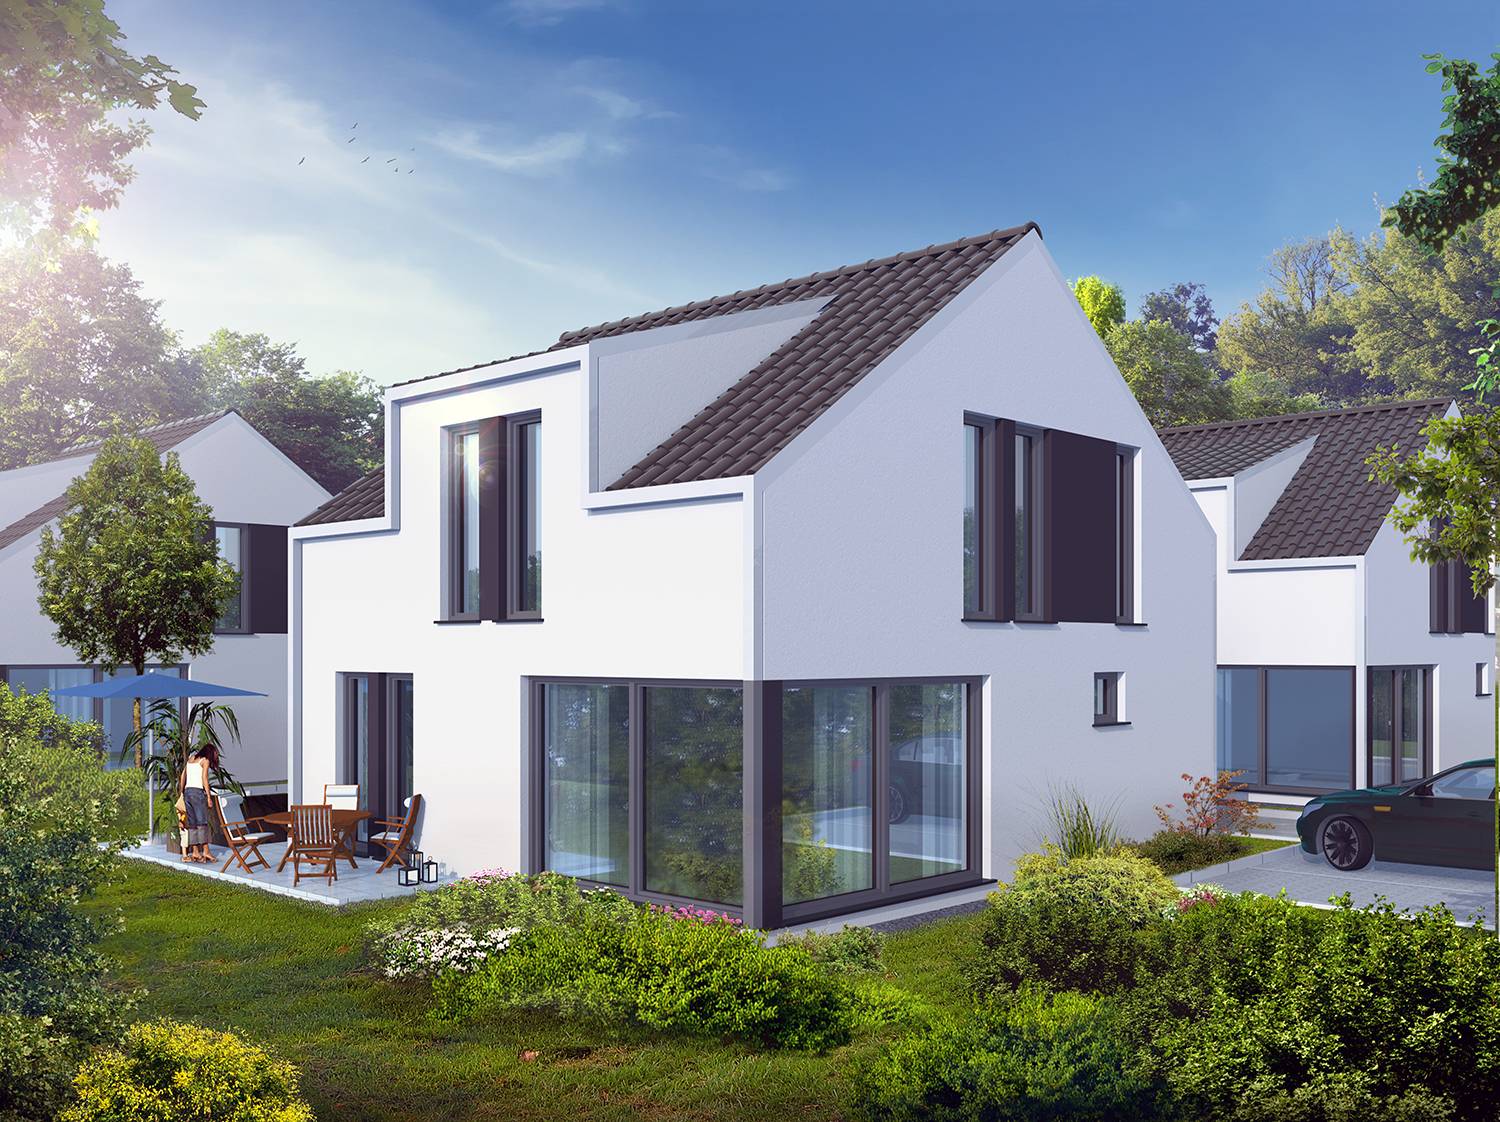 Architekturvisualisierungen in 3D der Gartenansicht eines neu geplanten Einfamilienhauses in einer Kleinsiedlung bestehend aus 4 ähnlichen EFH in Oestrich-Winkel für die Firma Arora UG / Frankfurt a. Main. Die Visualisierung wurde im Jahre 2022 erstellt